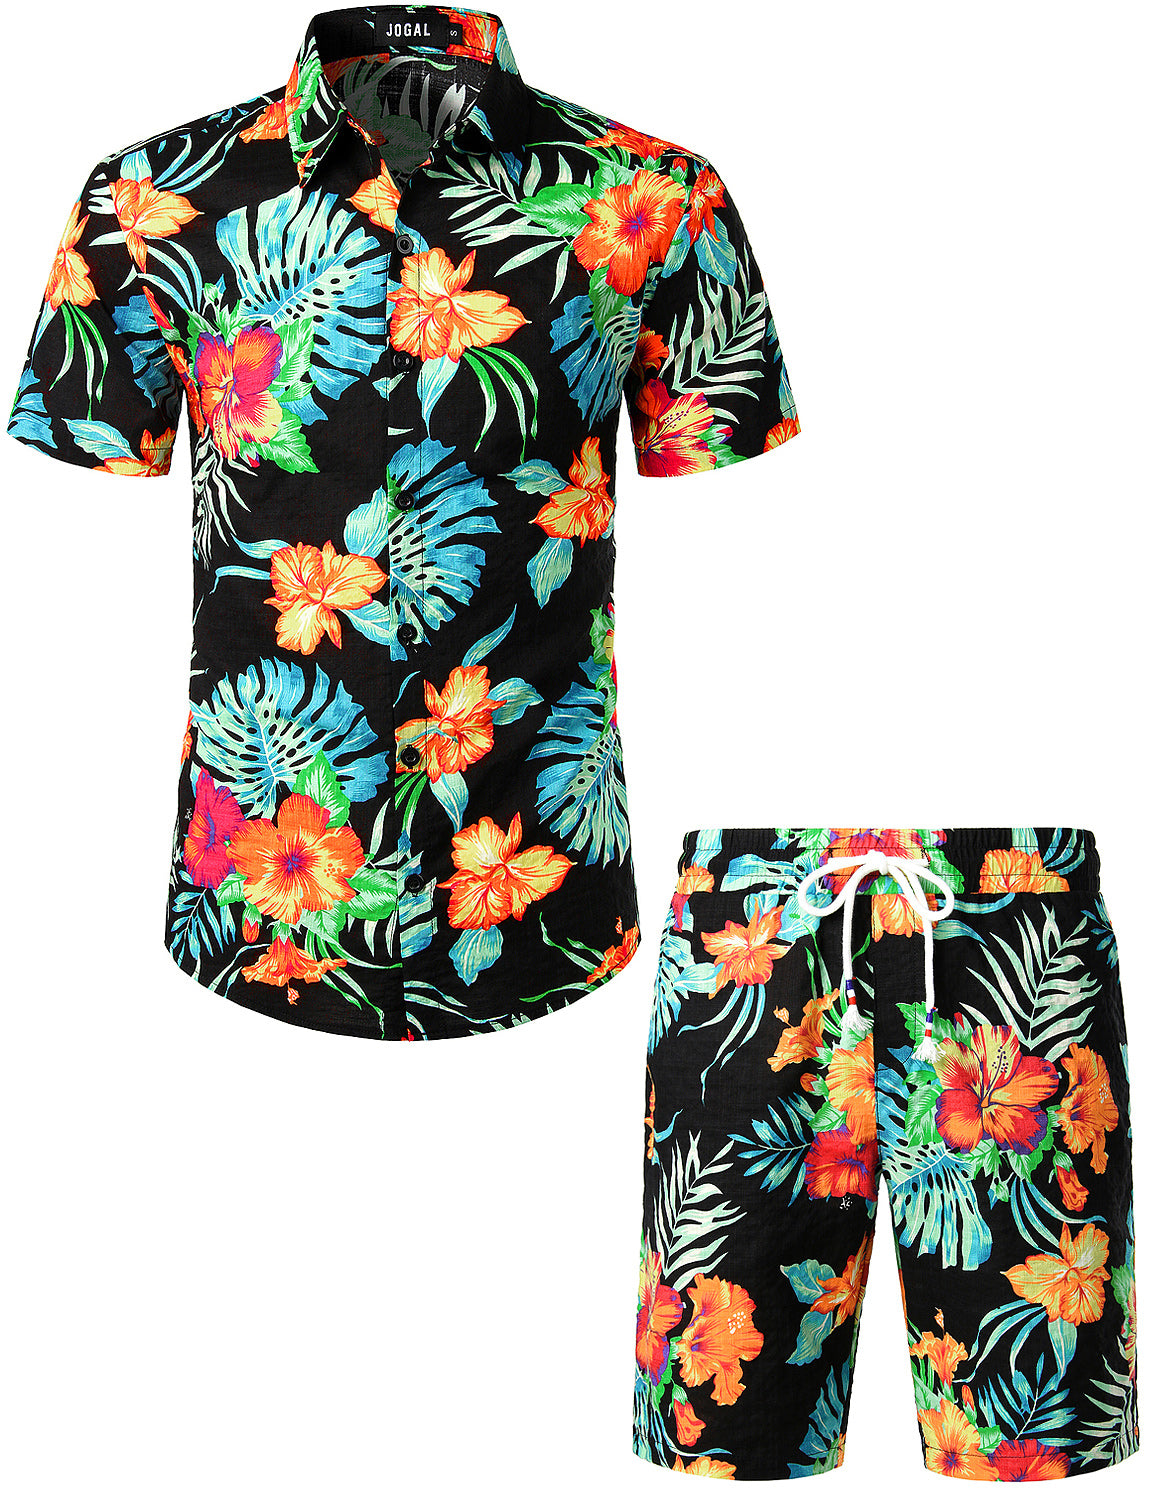 JOGAL Men's Flower Casual Button Down Short Sleeve Hawaiian Shirt, OrangeLf / XXL